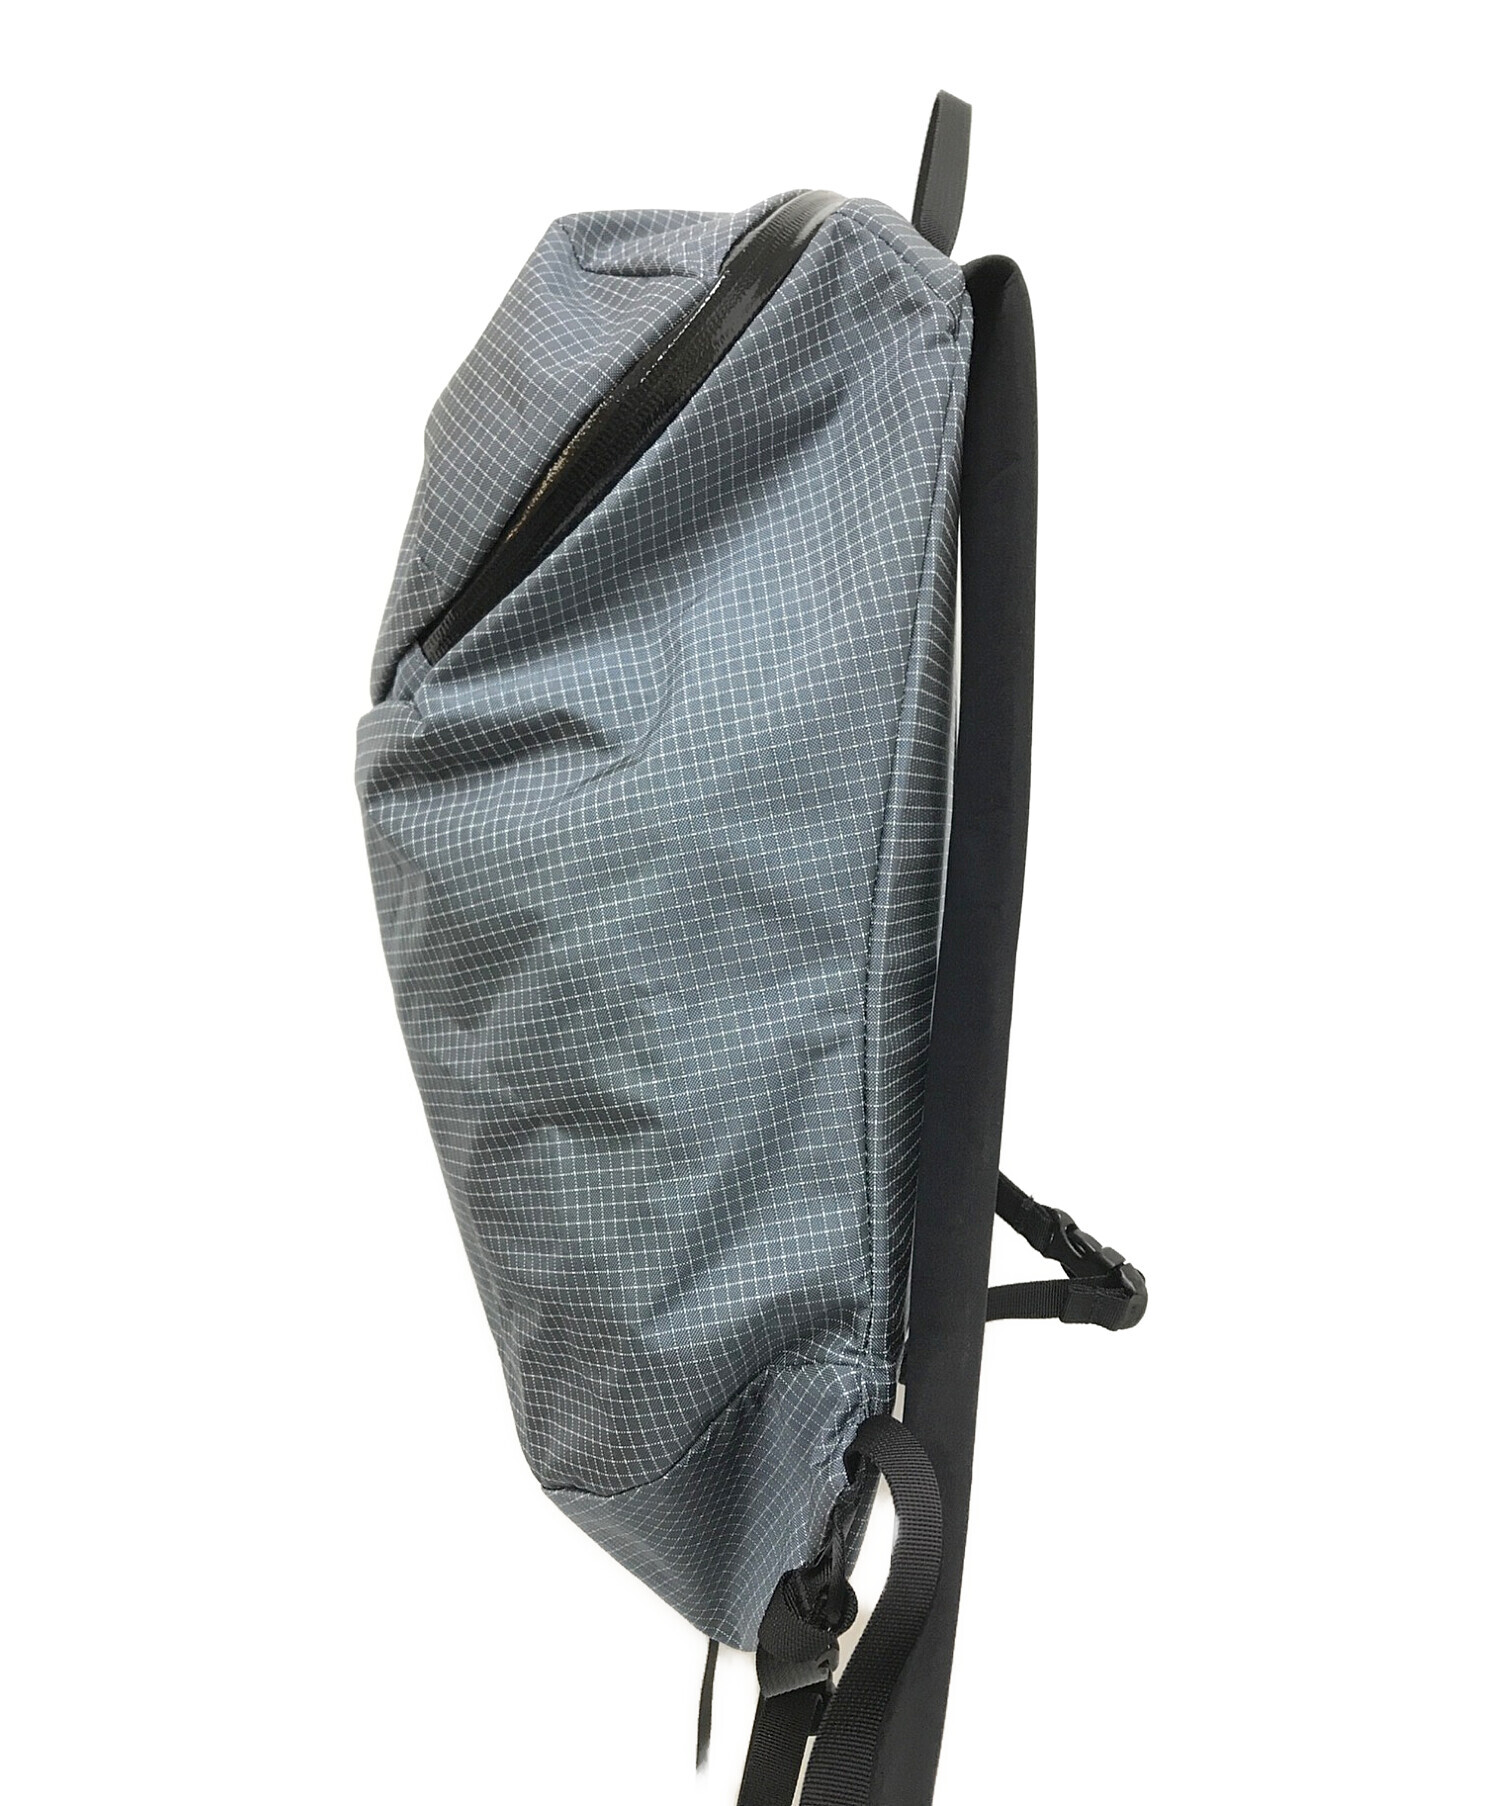 中古・古着通販】ARC'TERYX (アークテリクス) Konseal 15 Backpack